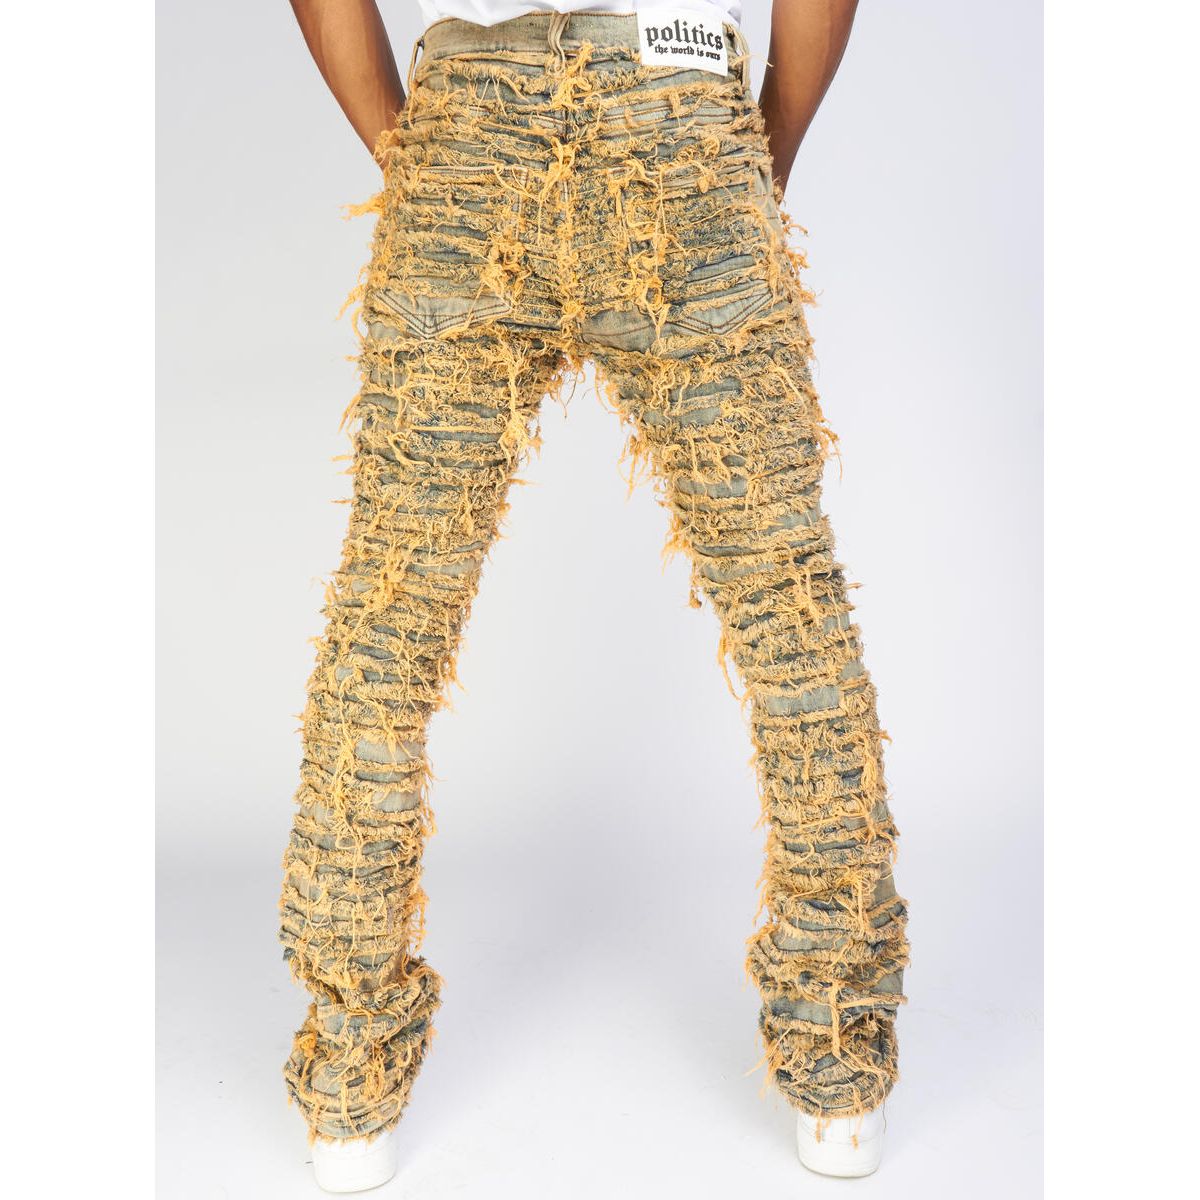 Politics Jeans Dark Vintage Thrashed Distressed Stacked Flare (Debris510)